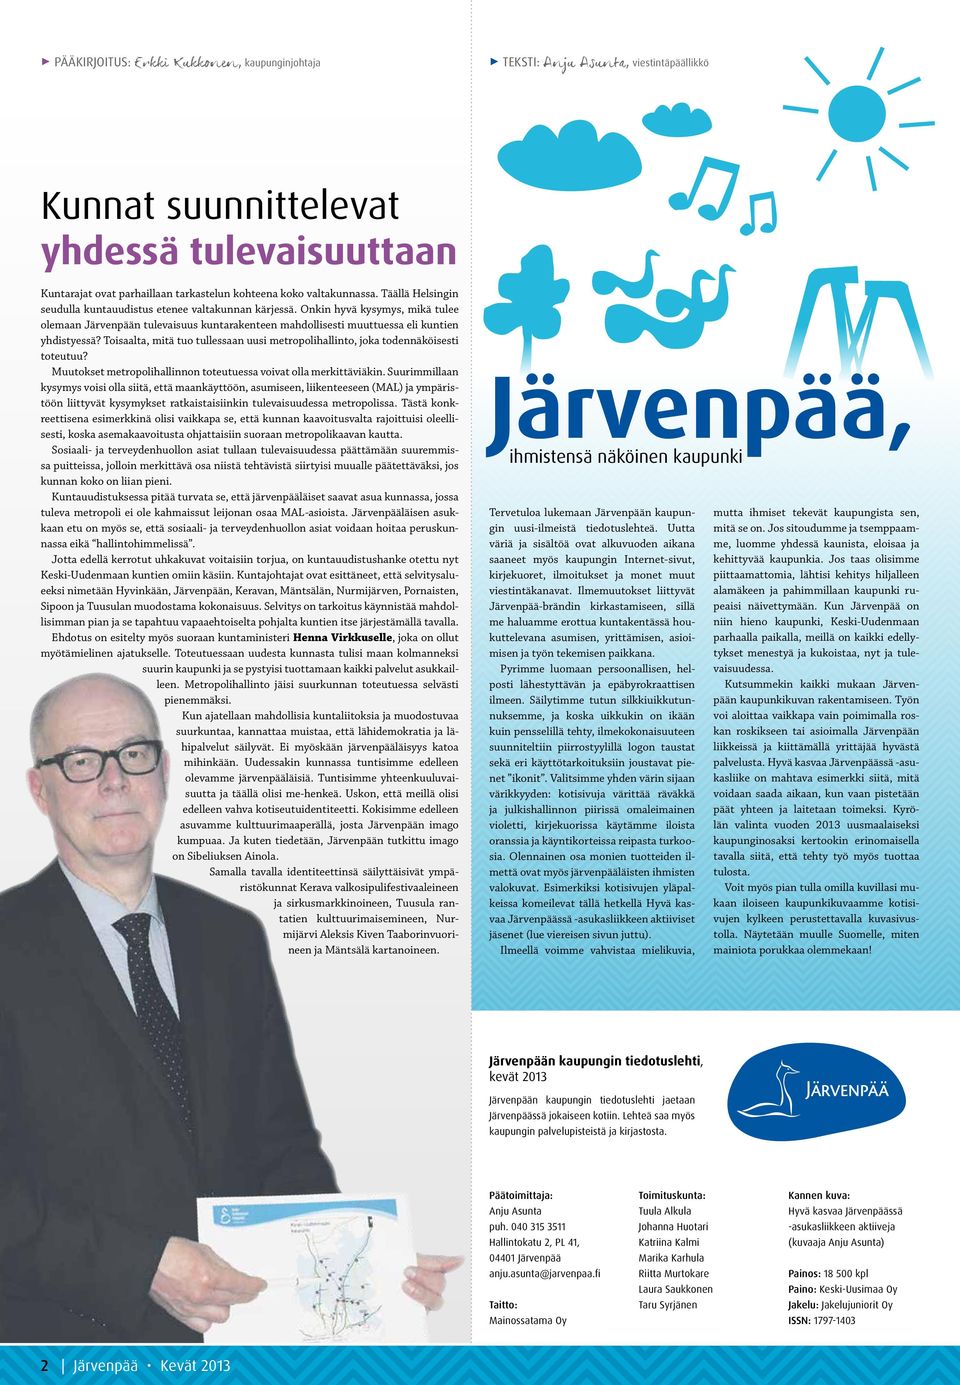 Onkin hyvä kysymys, mikä tulee olemaan Järvenpään tulevaisuus kuntarakenteen mahdollisesti muuttuessa eli kuntien yhdistyessä?